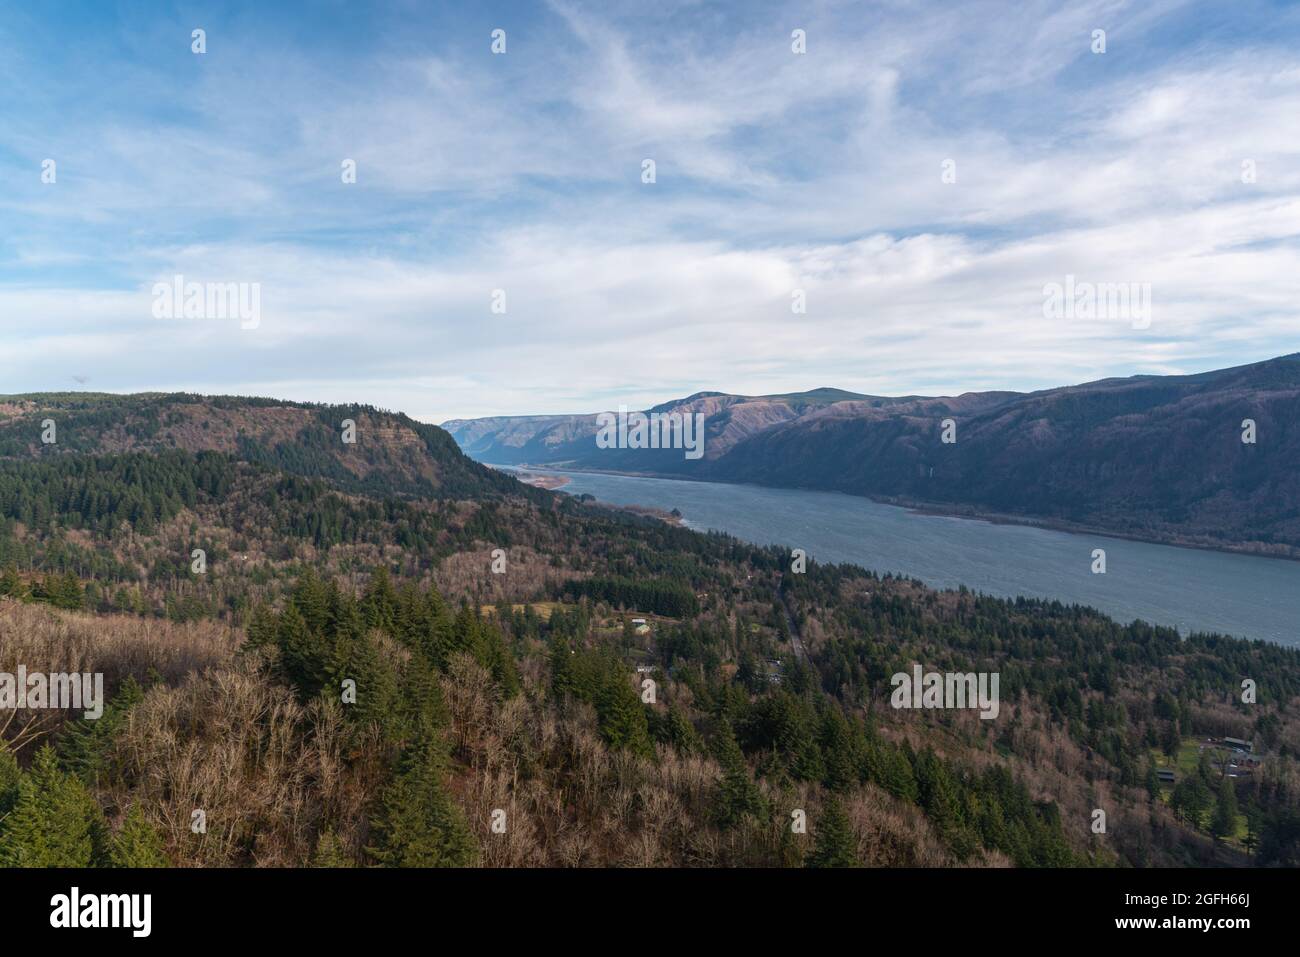 Erhöhte Wanderaussichten auf die majestätische Columbia River Gorge vom Cape Horn Trail, Washington State, Pacific Northwest Stockfoto